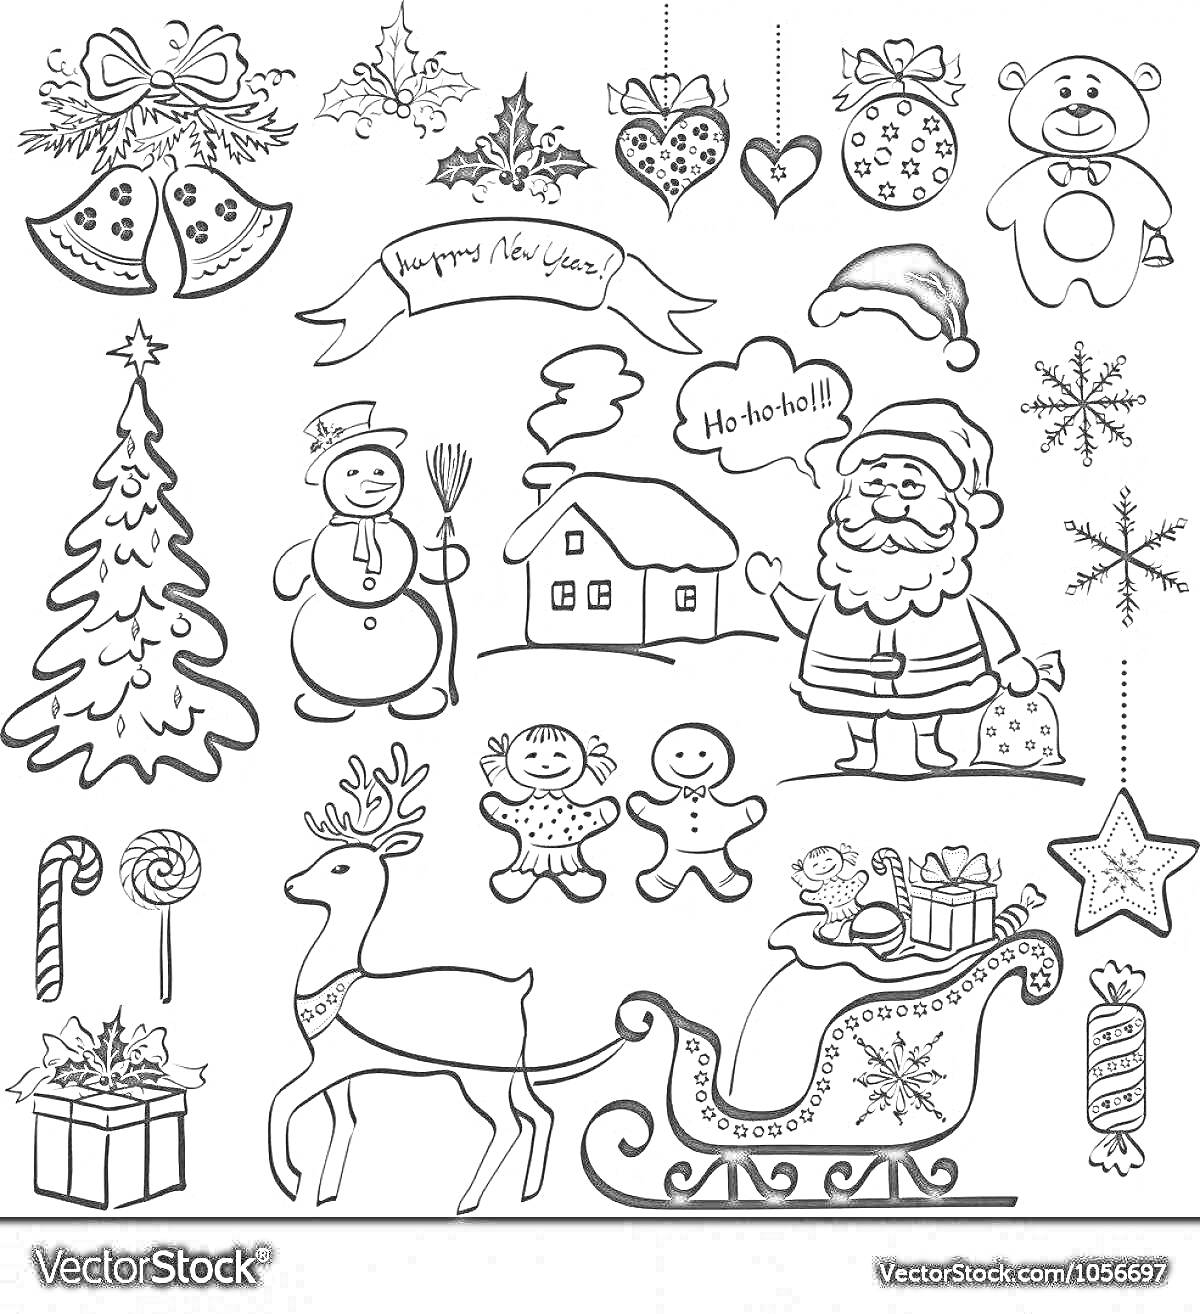 Раскраска Новогодние наклейки с украшениями, елкой, снеговиком, домиком, Дедом Морозом, конфетами, северным оленем, пряничными человечками, санями, подарками и снежинками